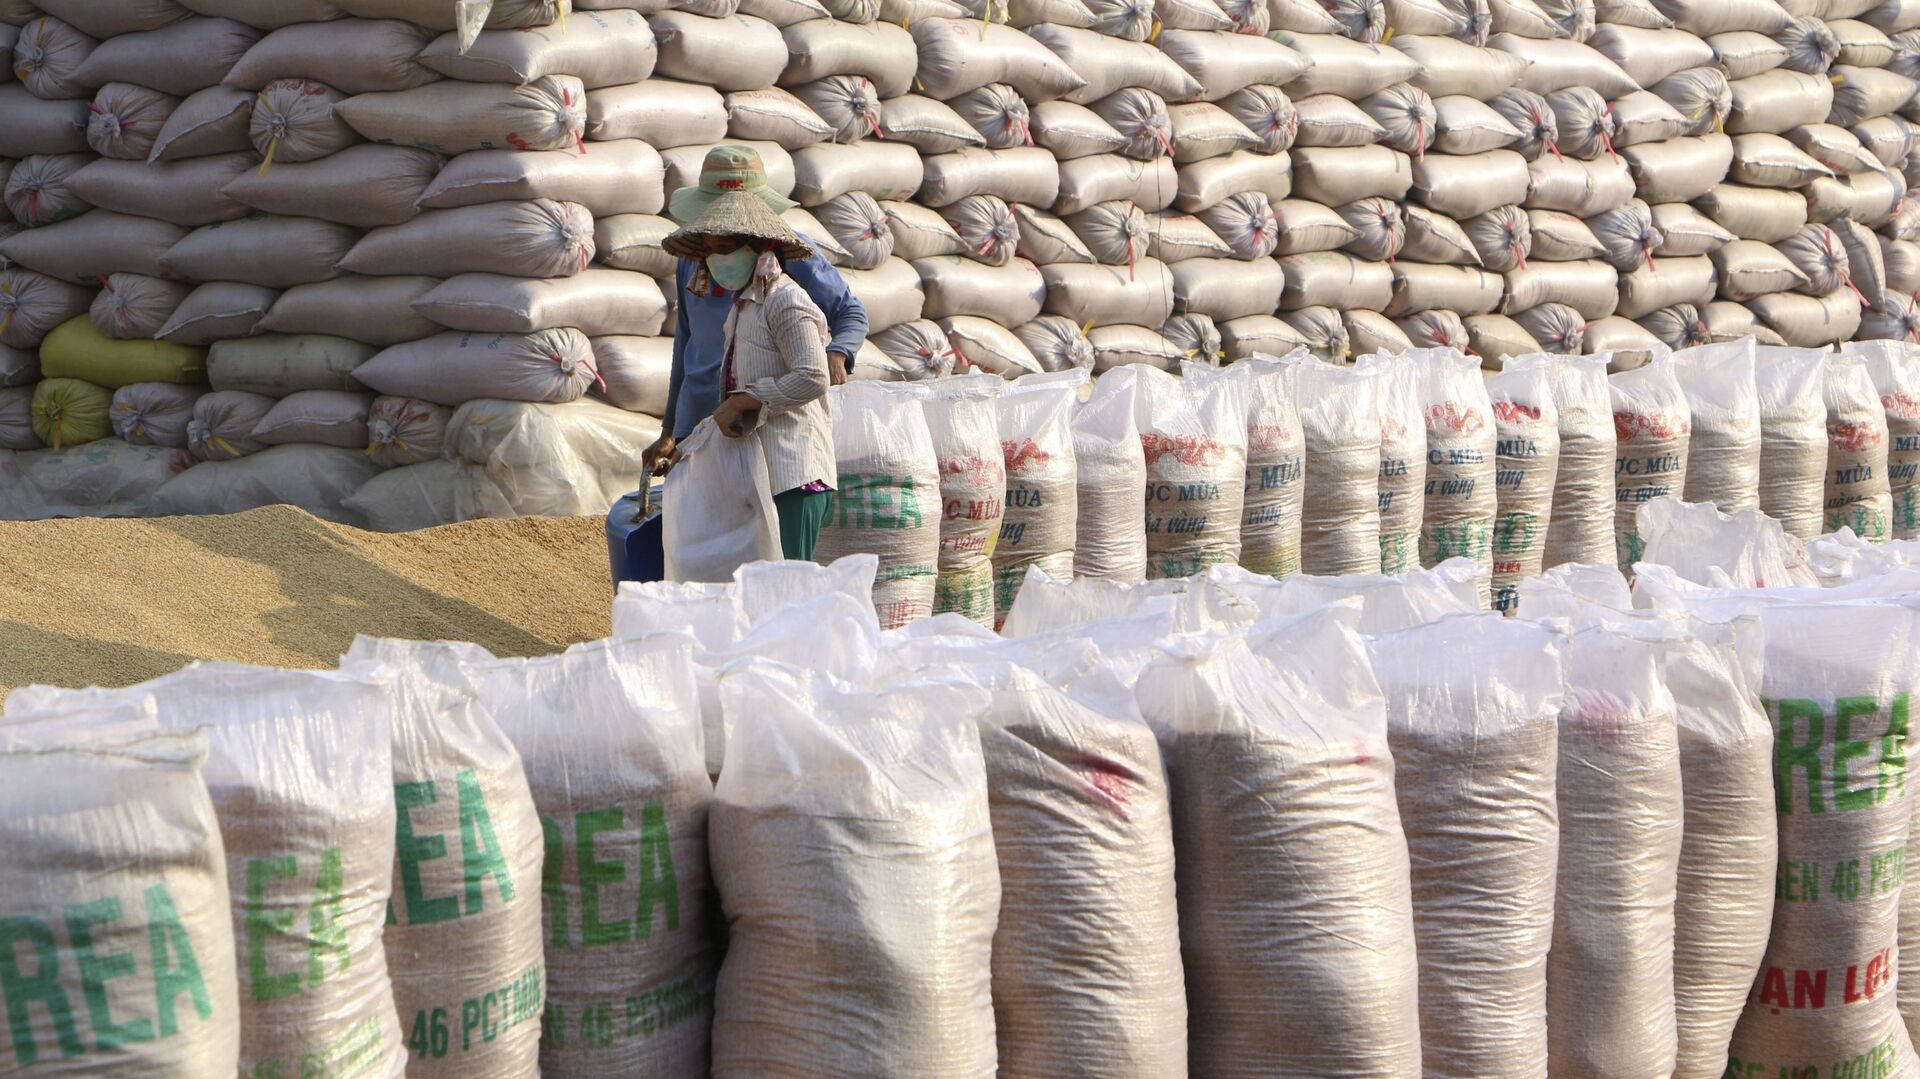 Xuất khẩu gạo của Việt Nam tiếp tục đạt mức giá cao kỷ lục, năm 2020, kim ngạch ước đạt trên 3 tỉ USD. - Sputnik Việt Nam, 1920, 23.02.2021